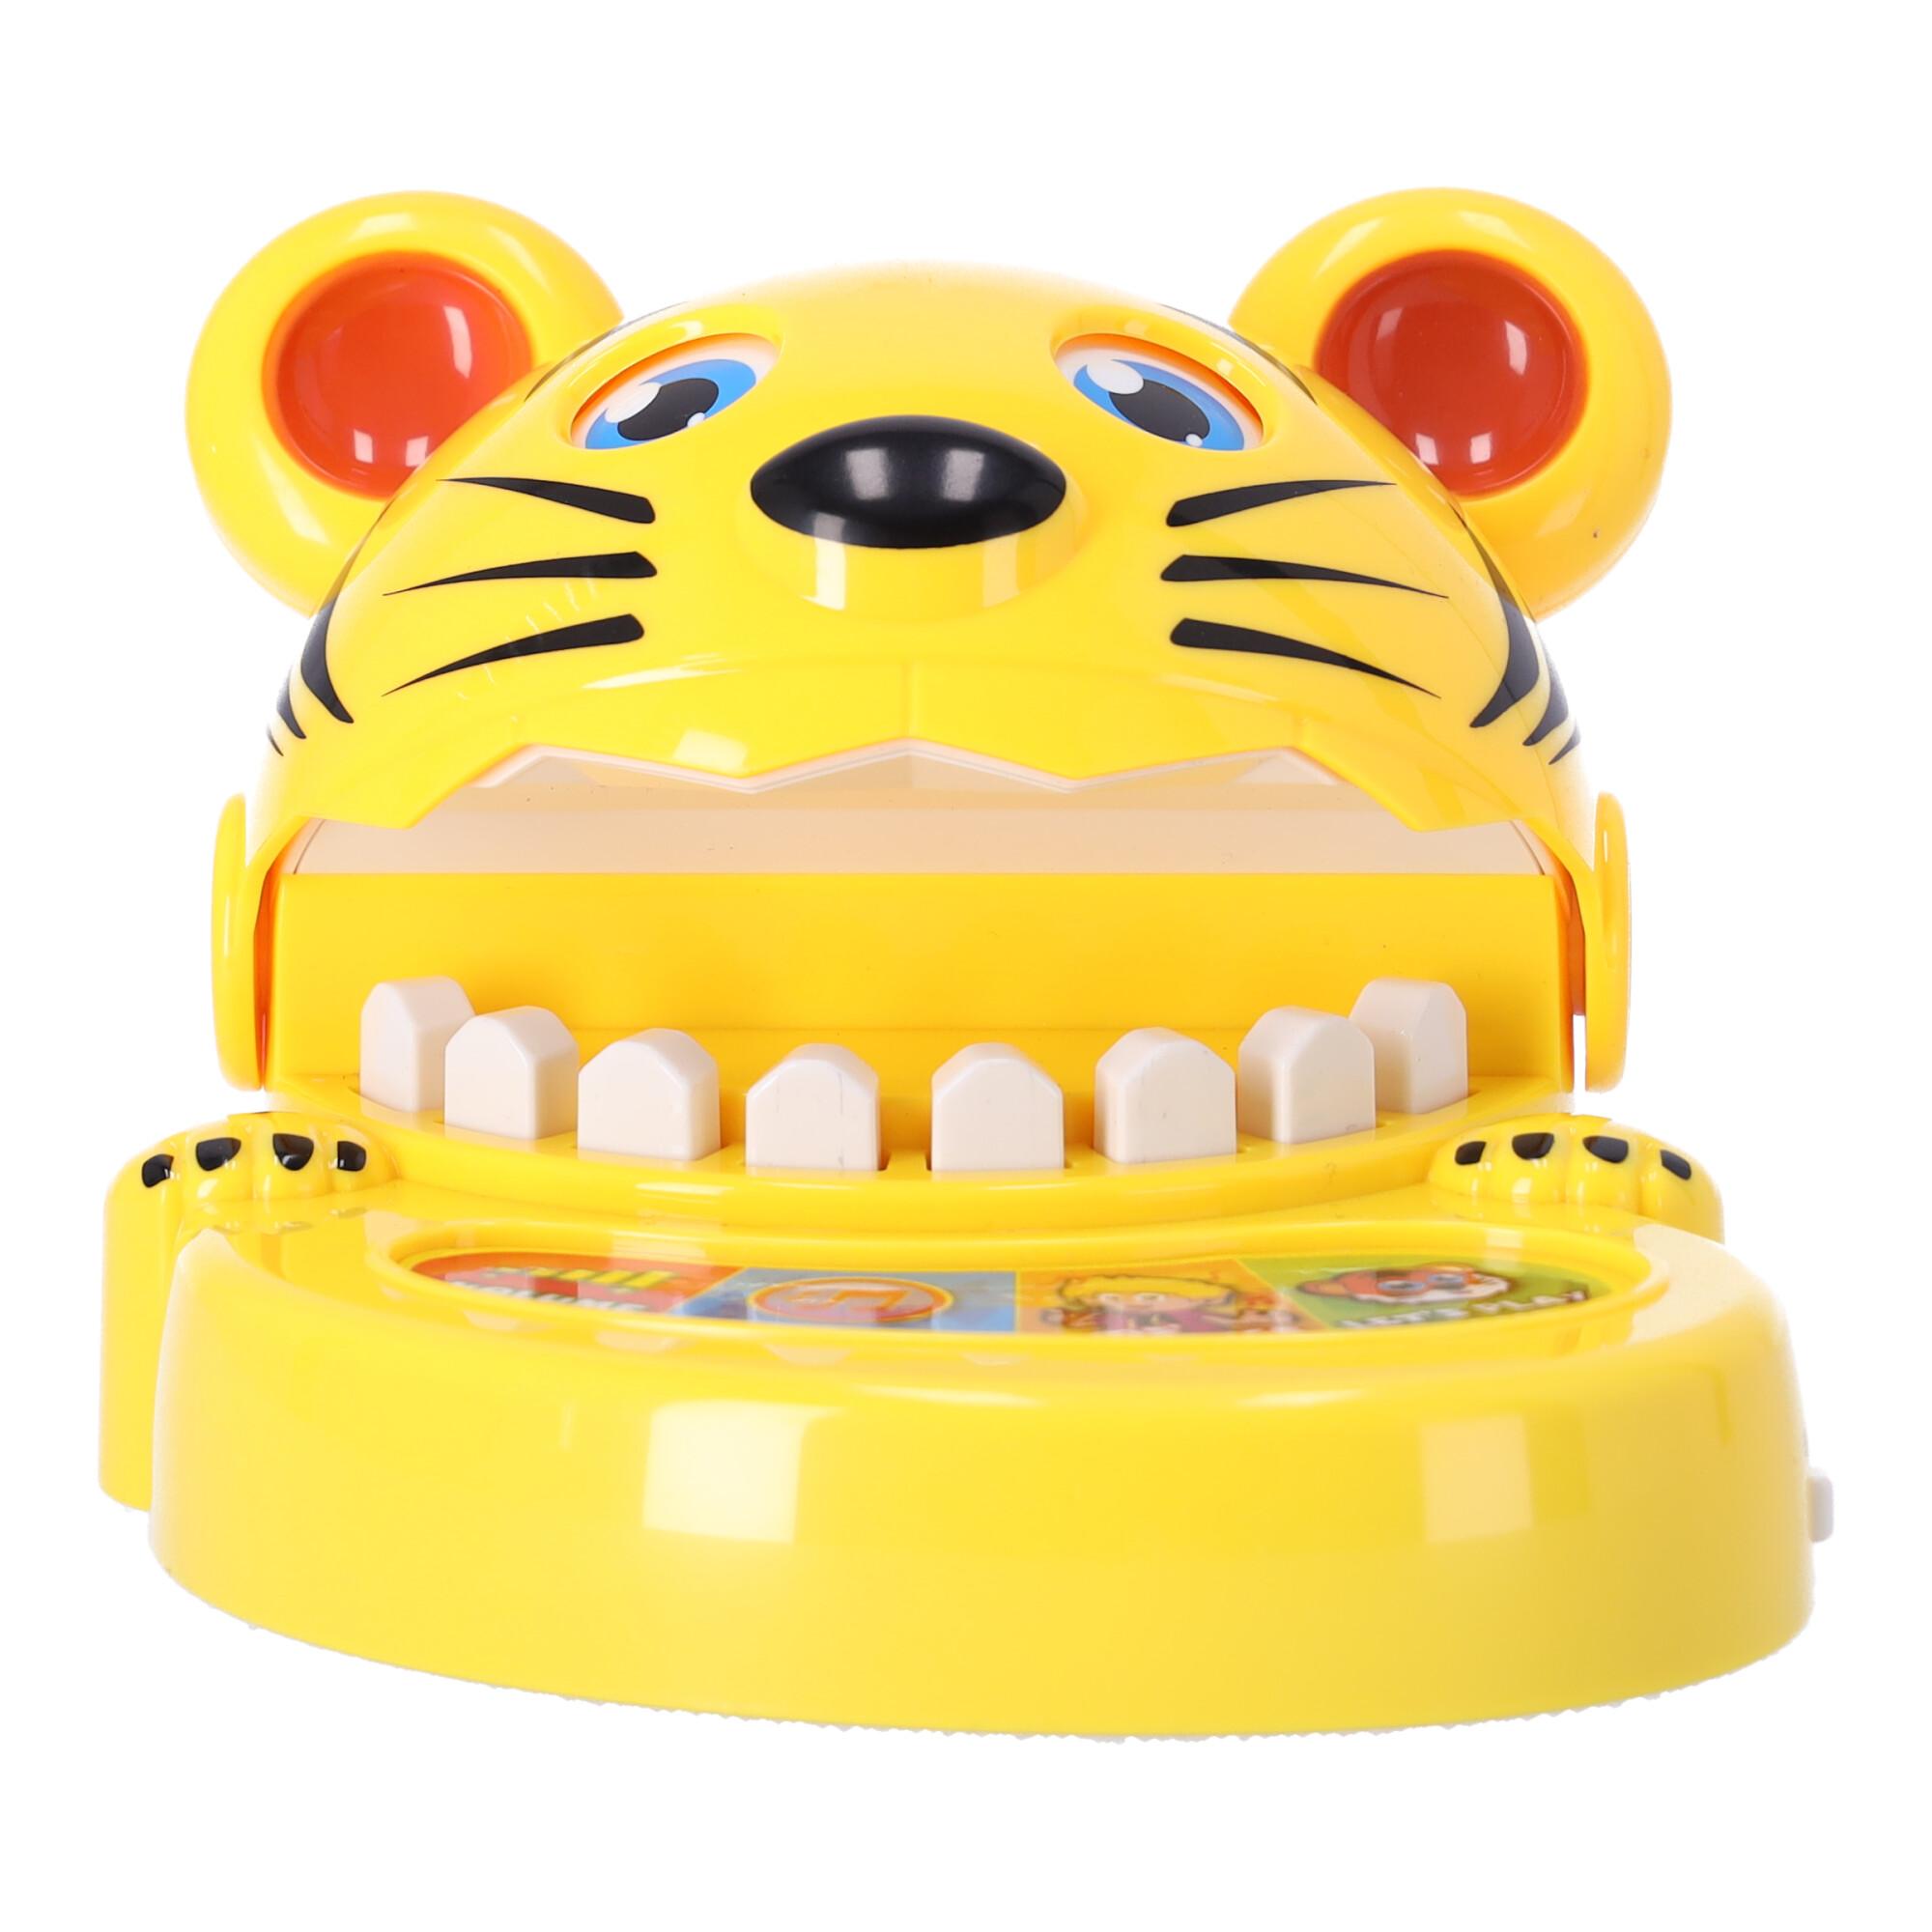 Biting tiger set toy-model